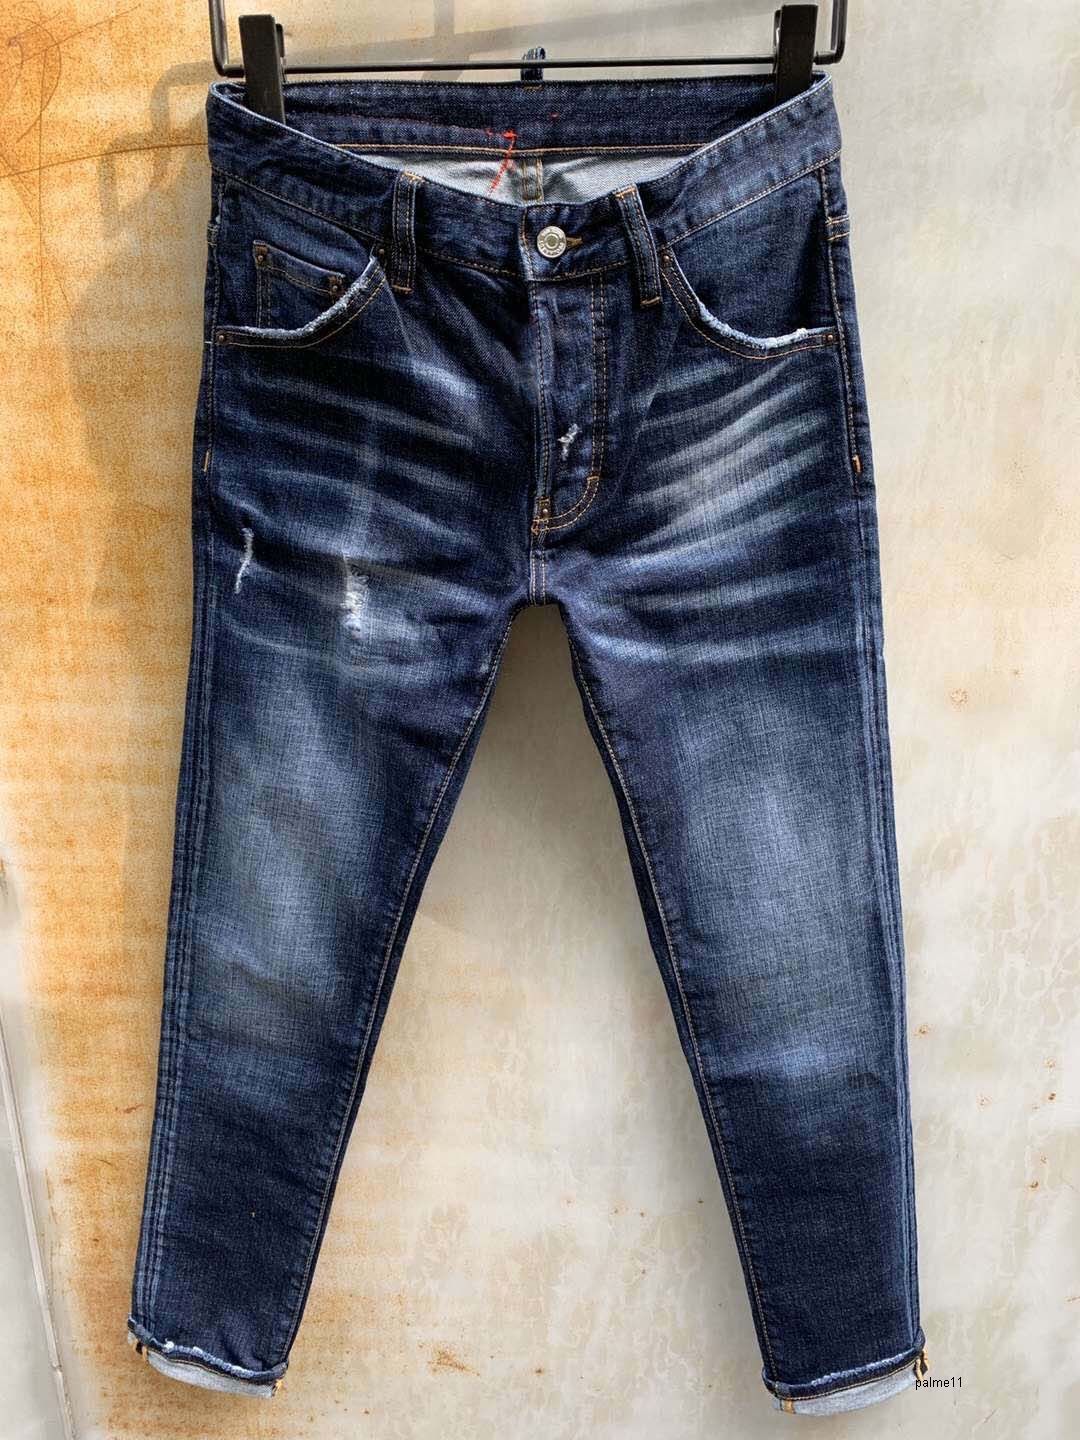 urban designer jeans